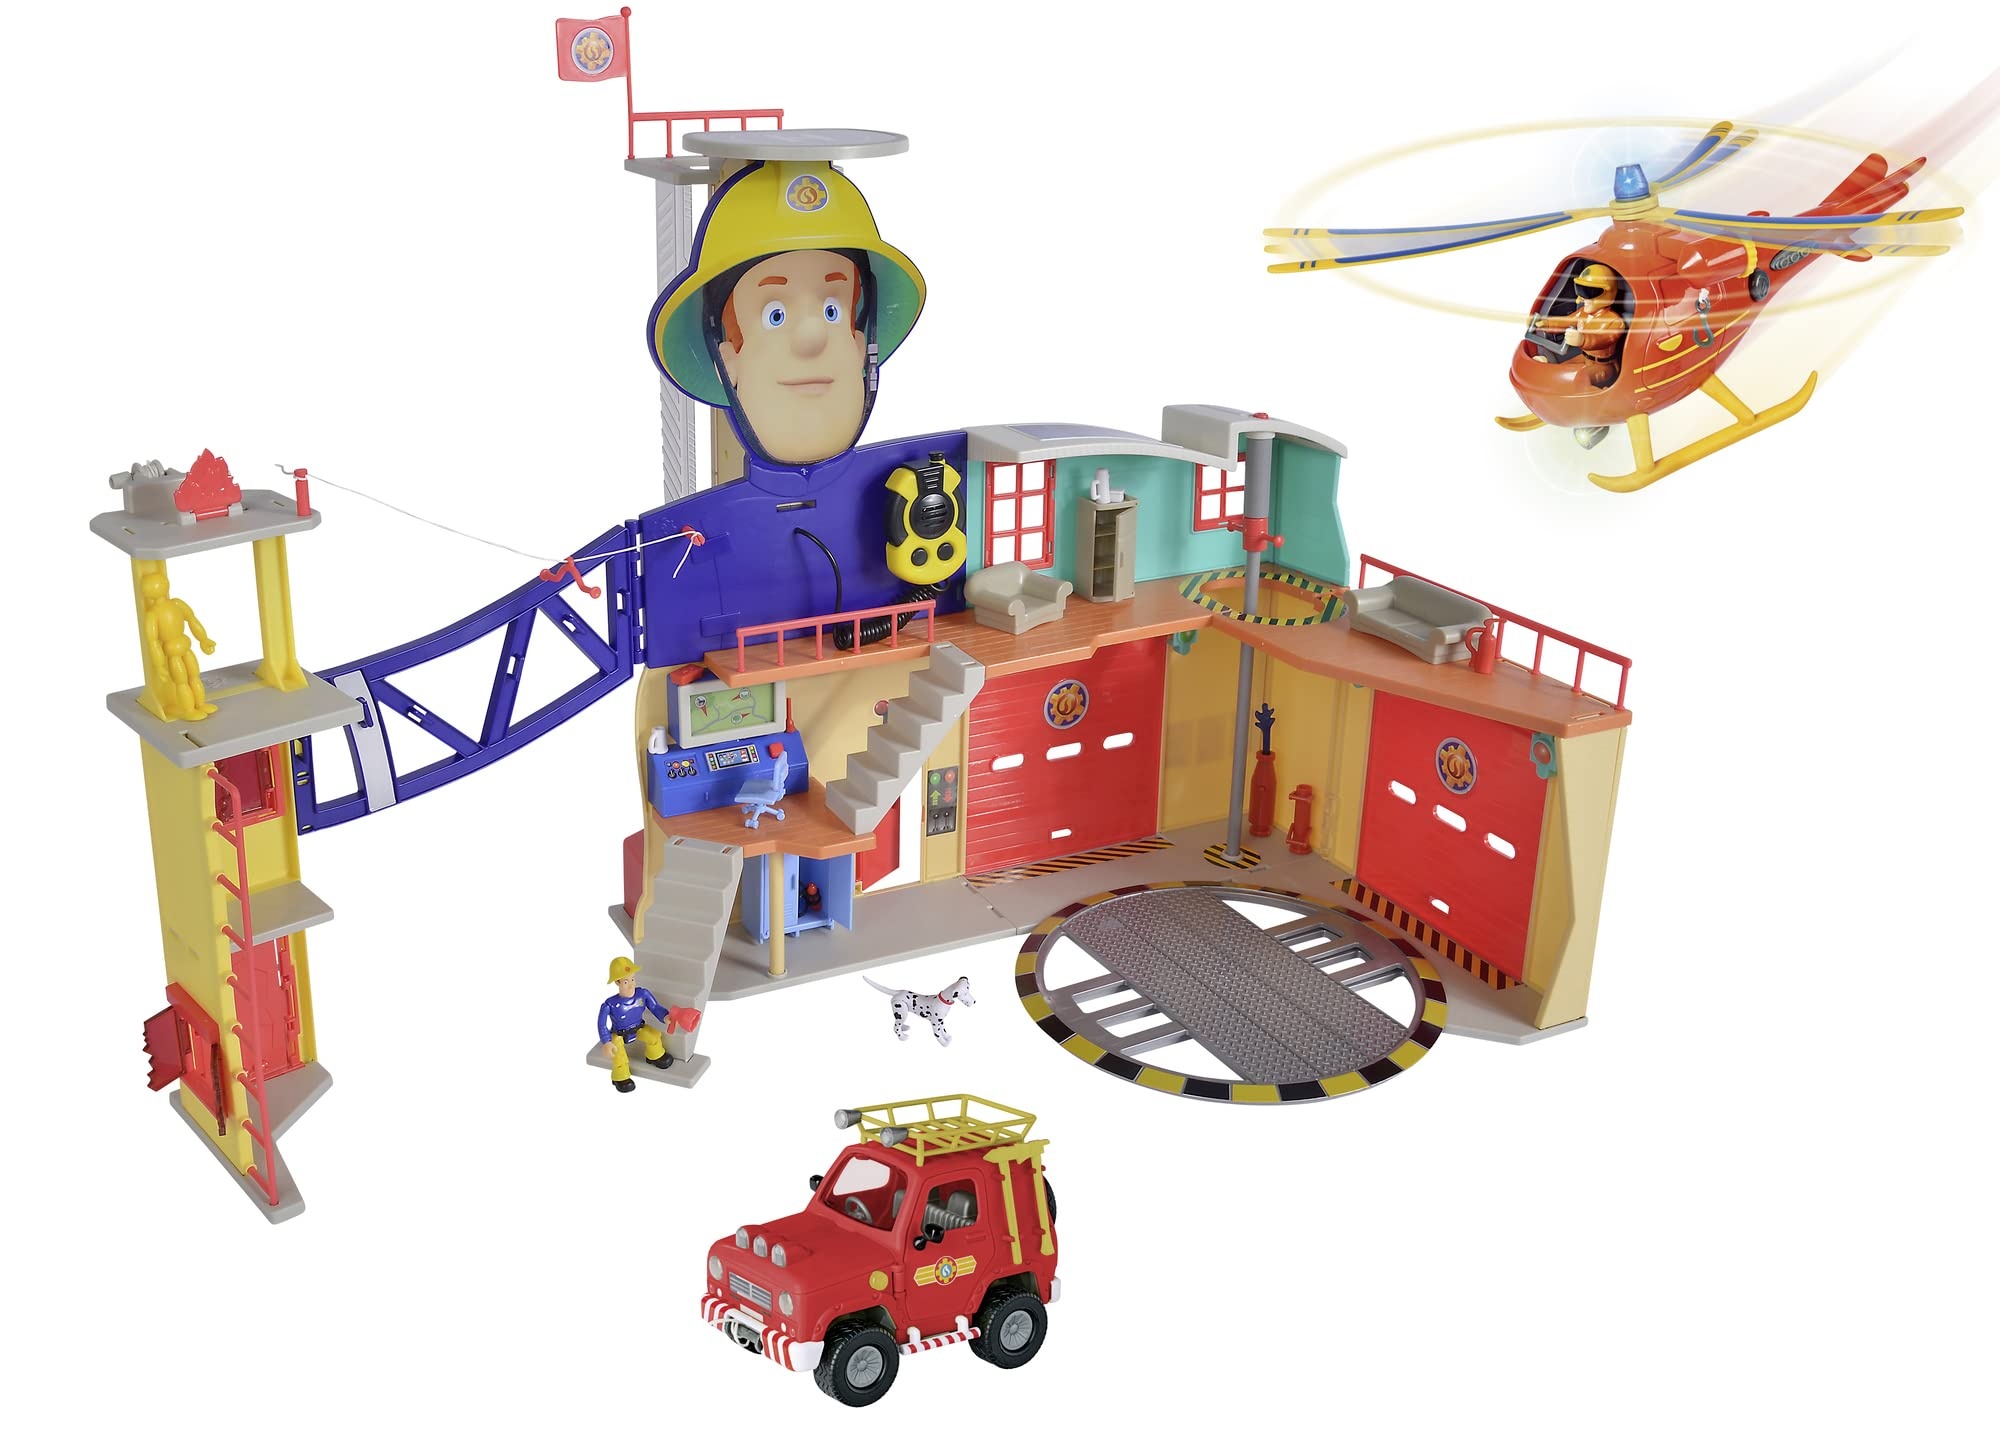 Simba - Mega XXL Feuerwehrmann Sam Station - Feuerwehrstation mit Hubschrauber Wallaby, 4x4 Feuerwehr-Auto (rot) und Figuren von Sam, Tom & Penny, Spielzeug für Kinder ab 3 Jahre [Exklusiv bei Amazon]